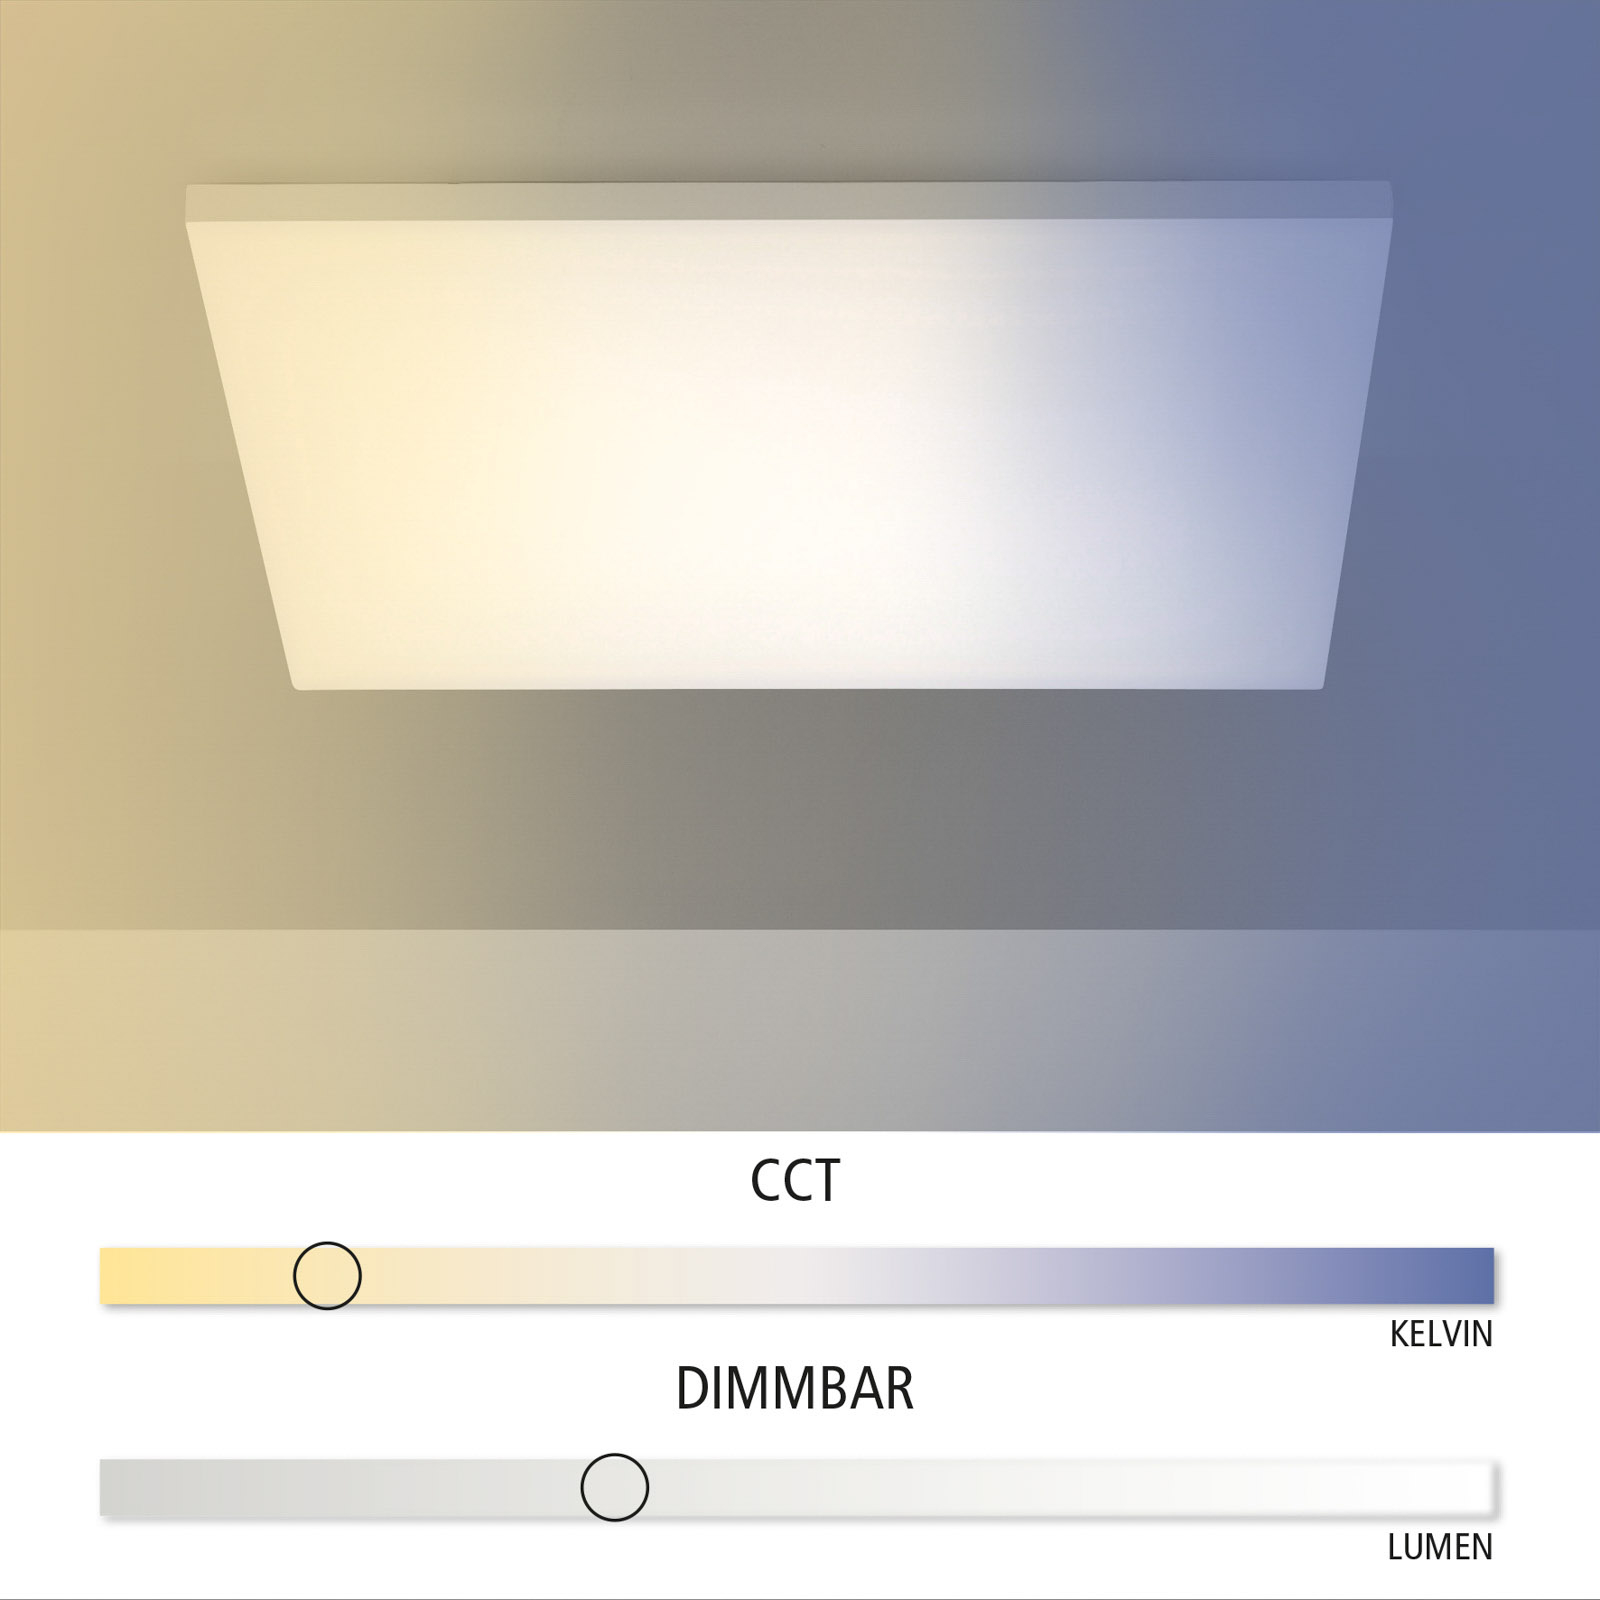 Φωτιστικό οροφής LED Canvas, ρυθμιζόμενο λευκό, 60 cm